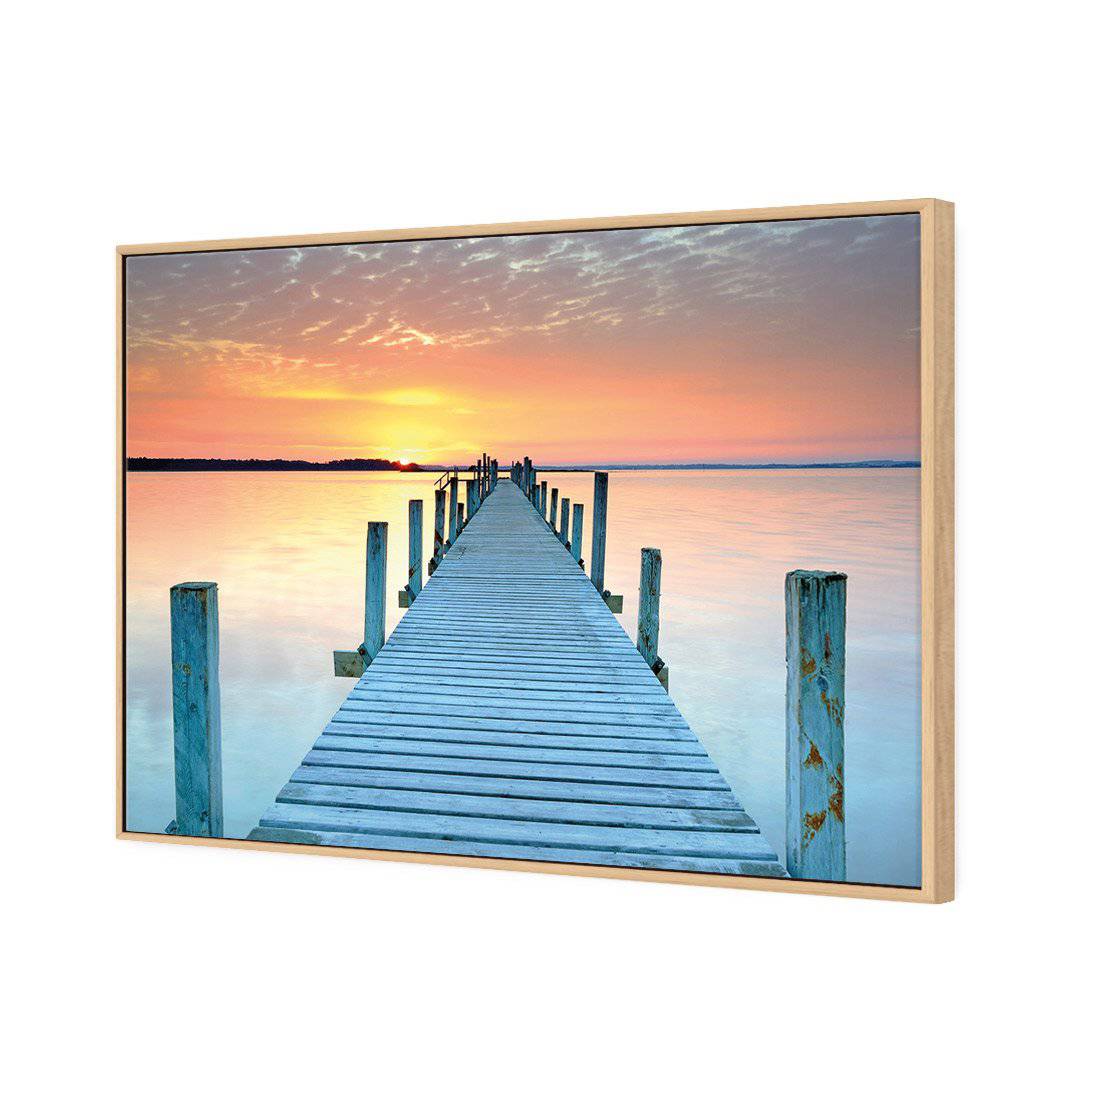 Sunset Pier Canvas Art-Canvas-Wall Art Designs-45x30cm-Canvas - Oak Frame-Wall Art Designs